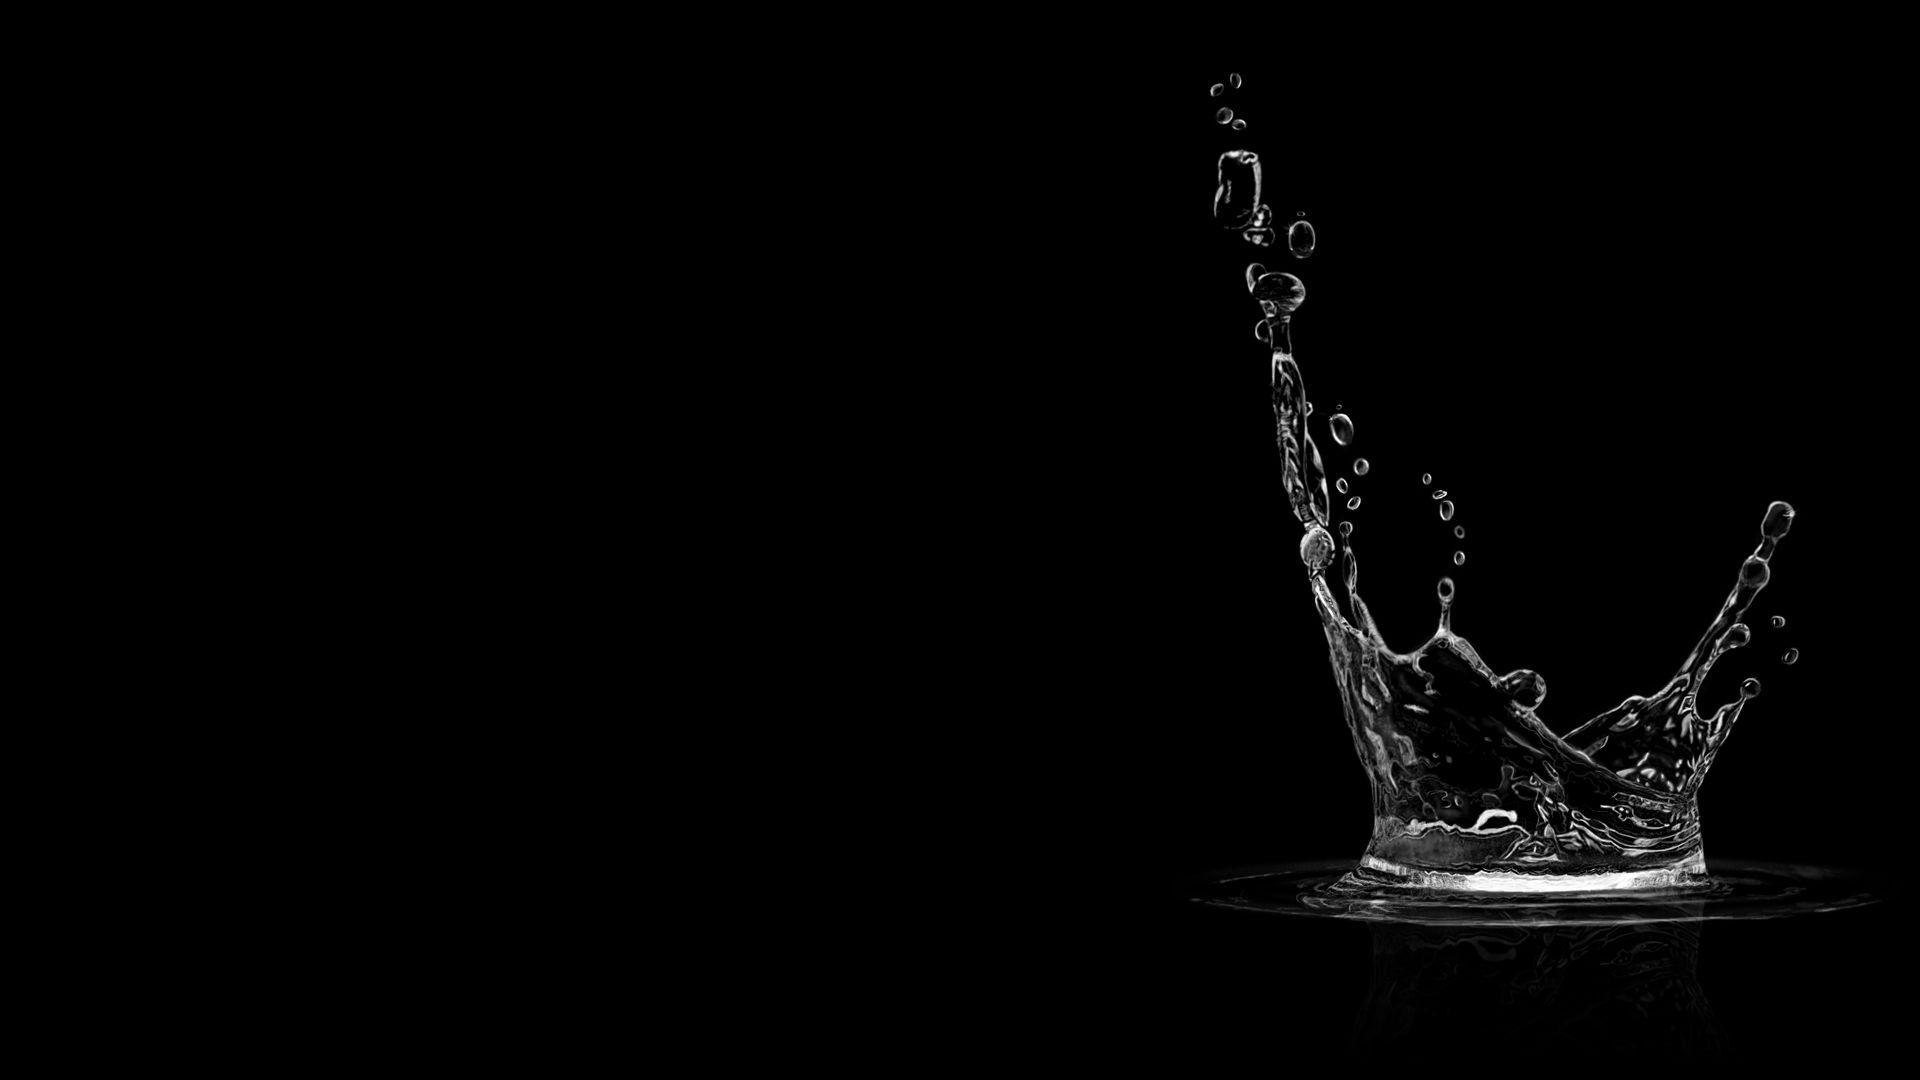 photo splash black and white